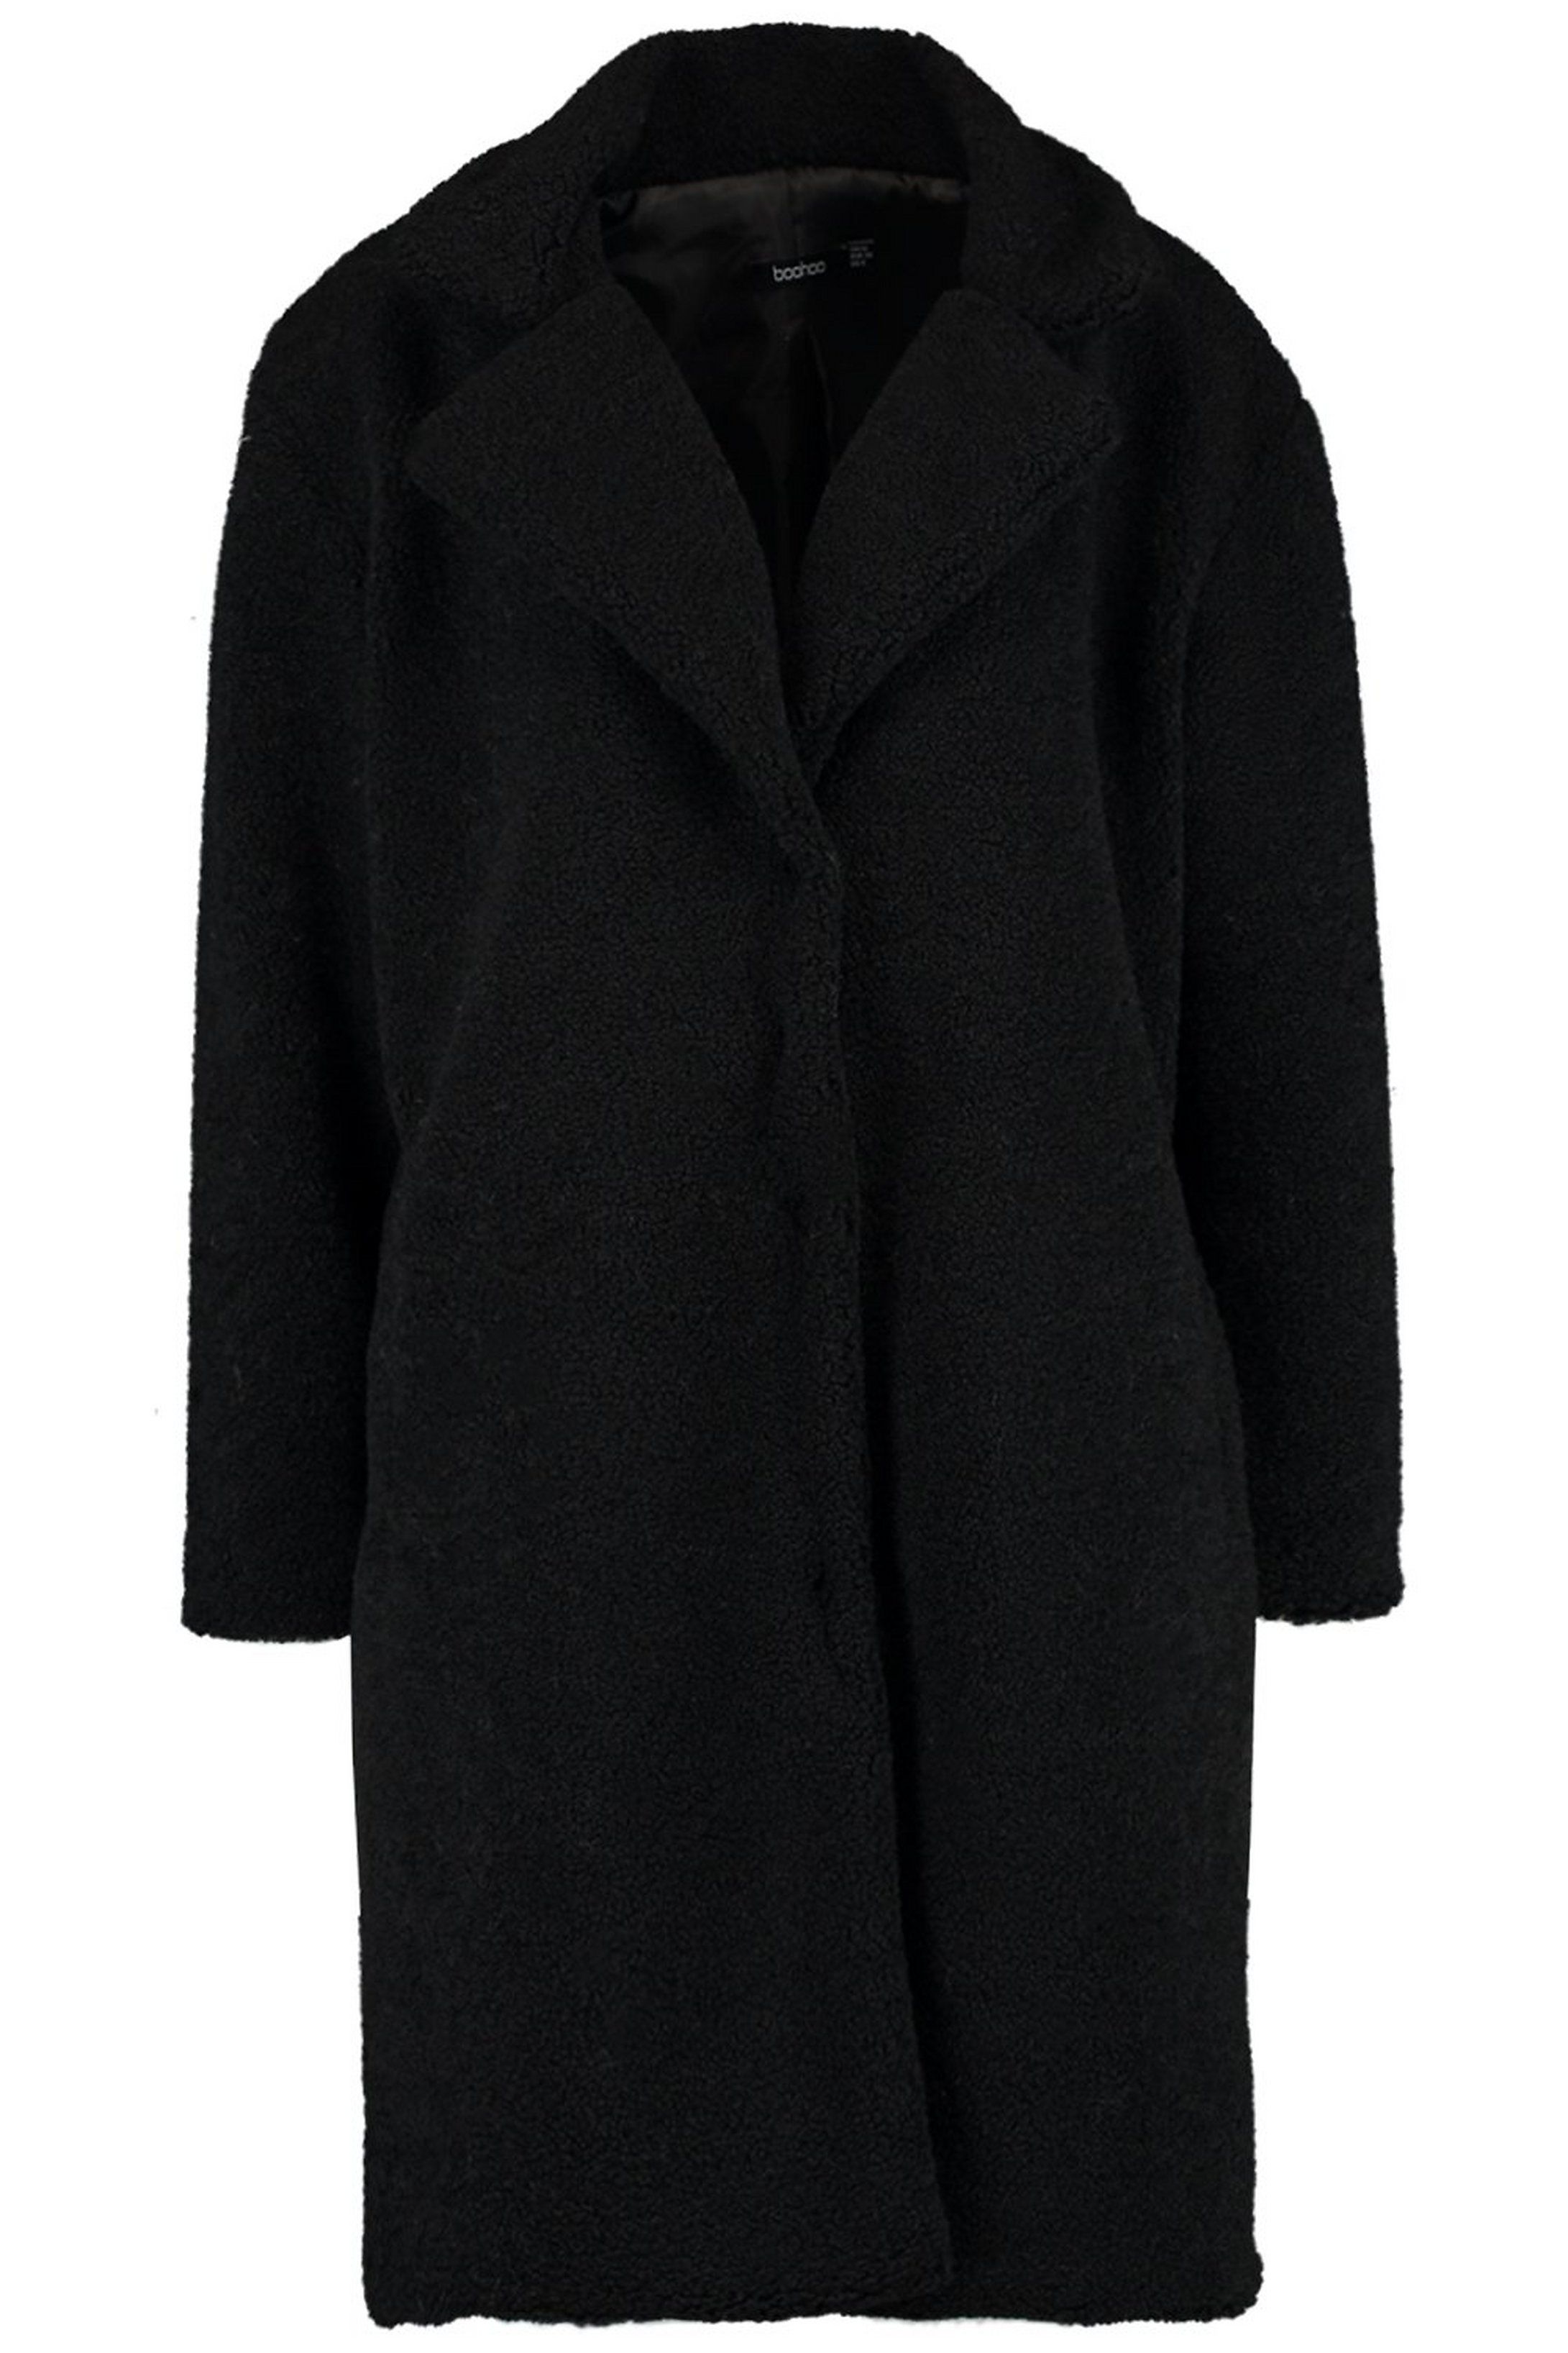 Teddy Faux Fur Coat | Boohoo.com (US & CA)